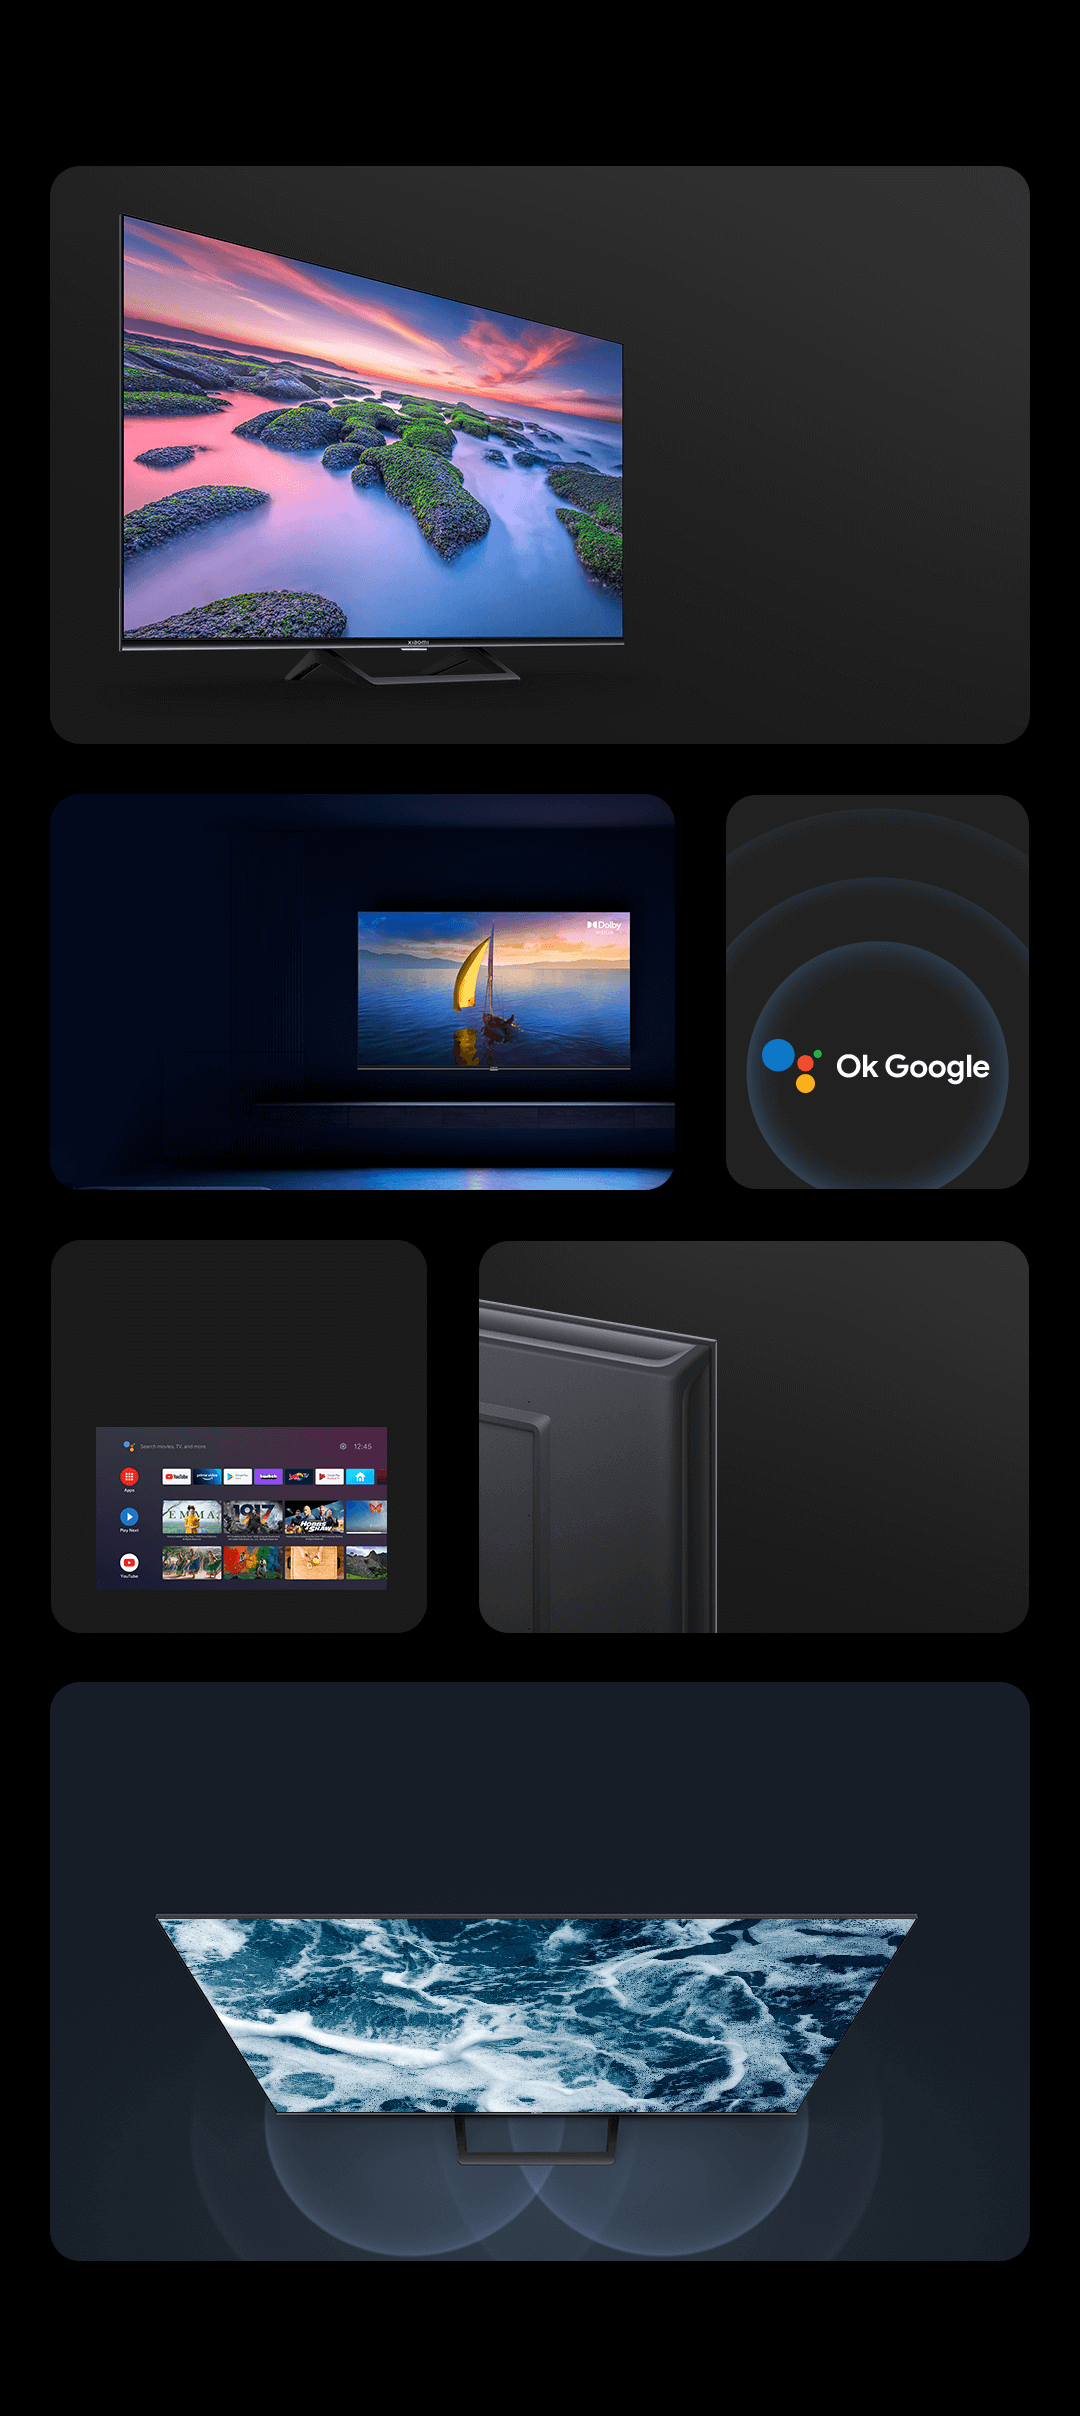 Xiaomi TV A2 32″, MediaTek Mali G52 MP2, Android TV/Google Assistant por  1399,00€.